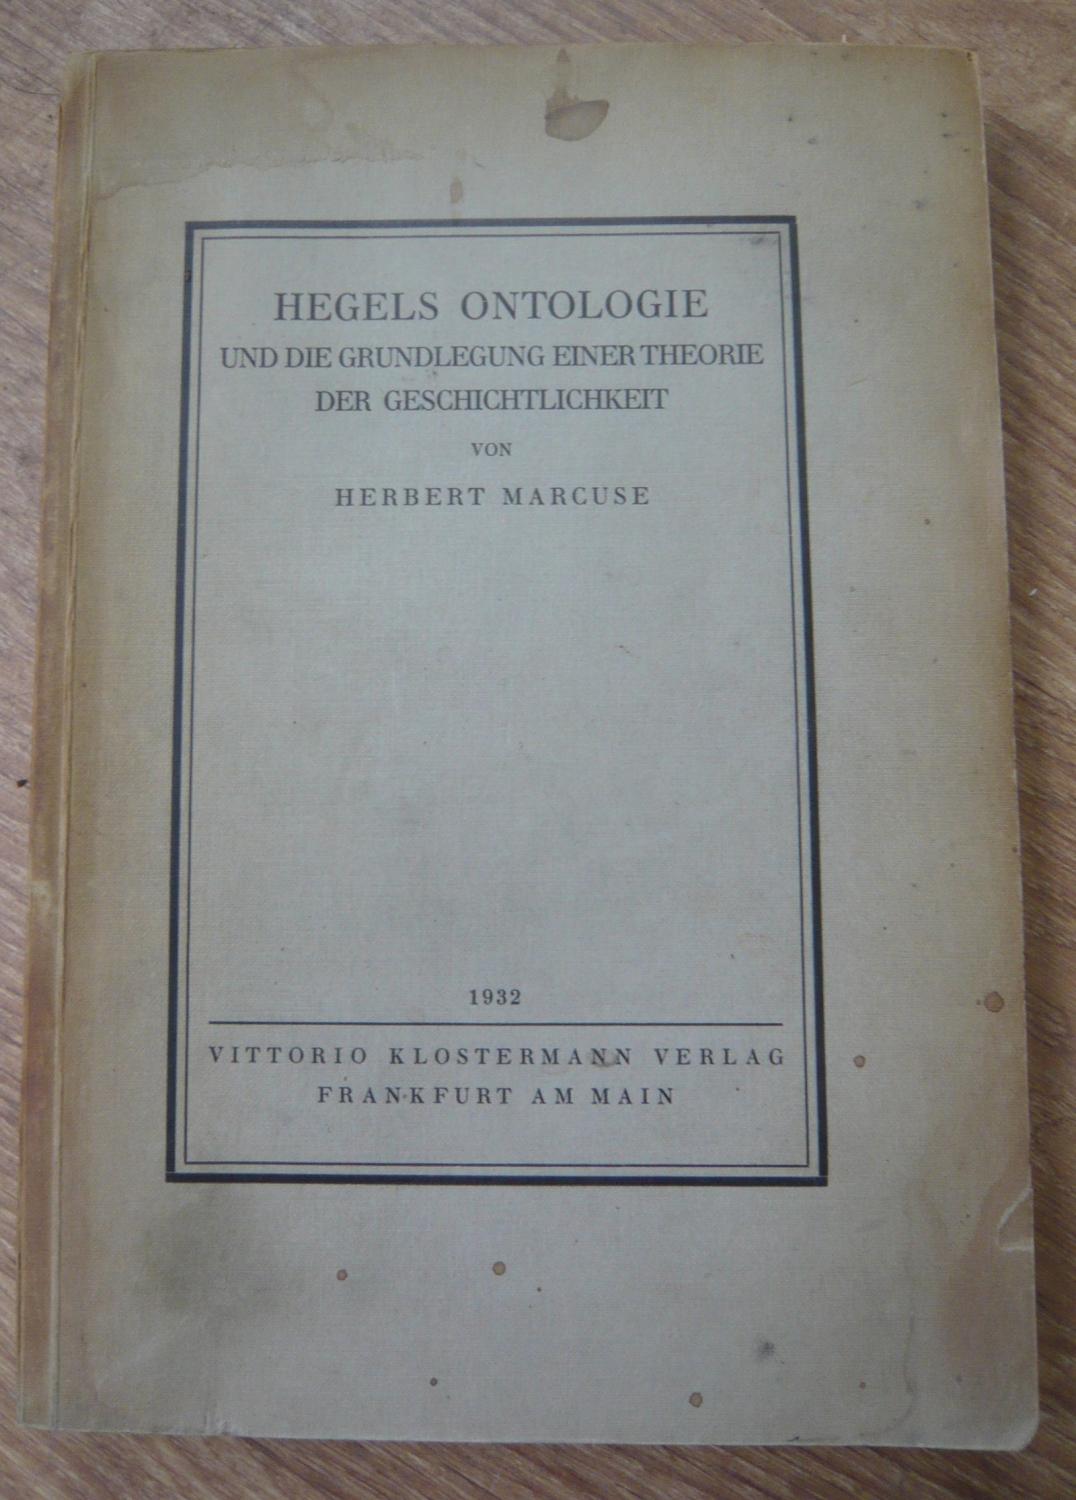 Hegels Ontologie und die Grundlegung einer Theorie der Geschichtlichkeit von Herbert Marcuse - Herbert Marcuse